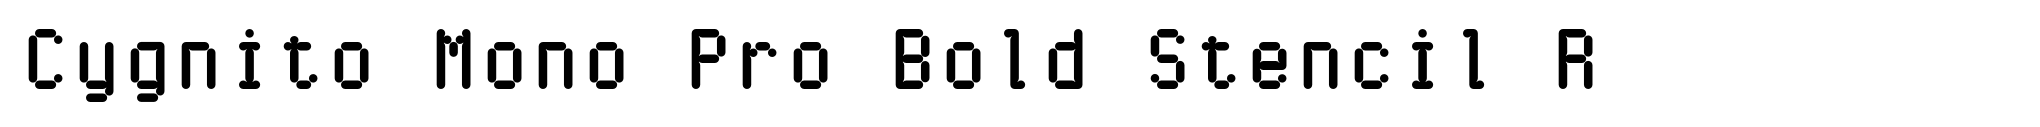 Cygnito Mono Pro Bold Stencil R image